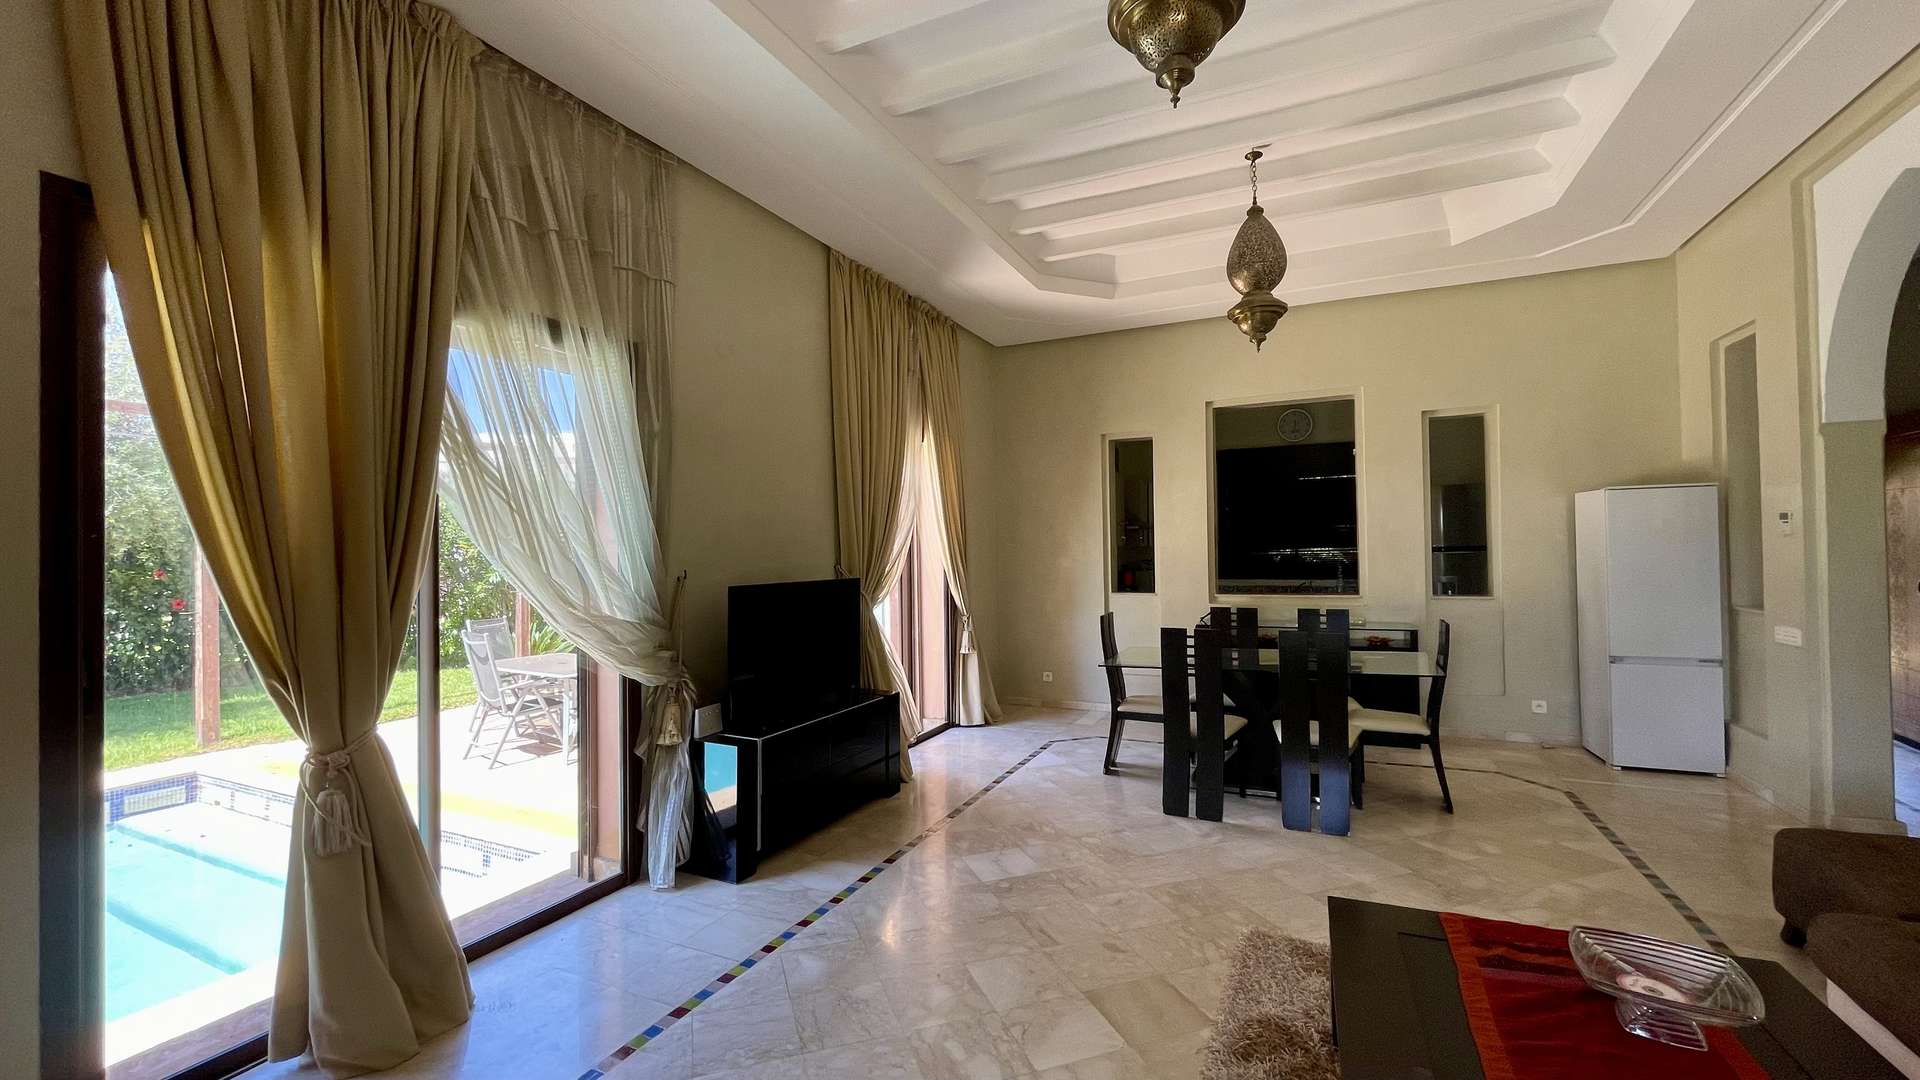 Location de vacances,Villa,Villa mitoyenne 3 chambres à coucher de plain-pieds sur la route de Fès à 20 min. du centre,Marrakech,Route de Fès